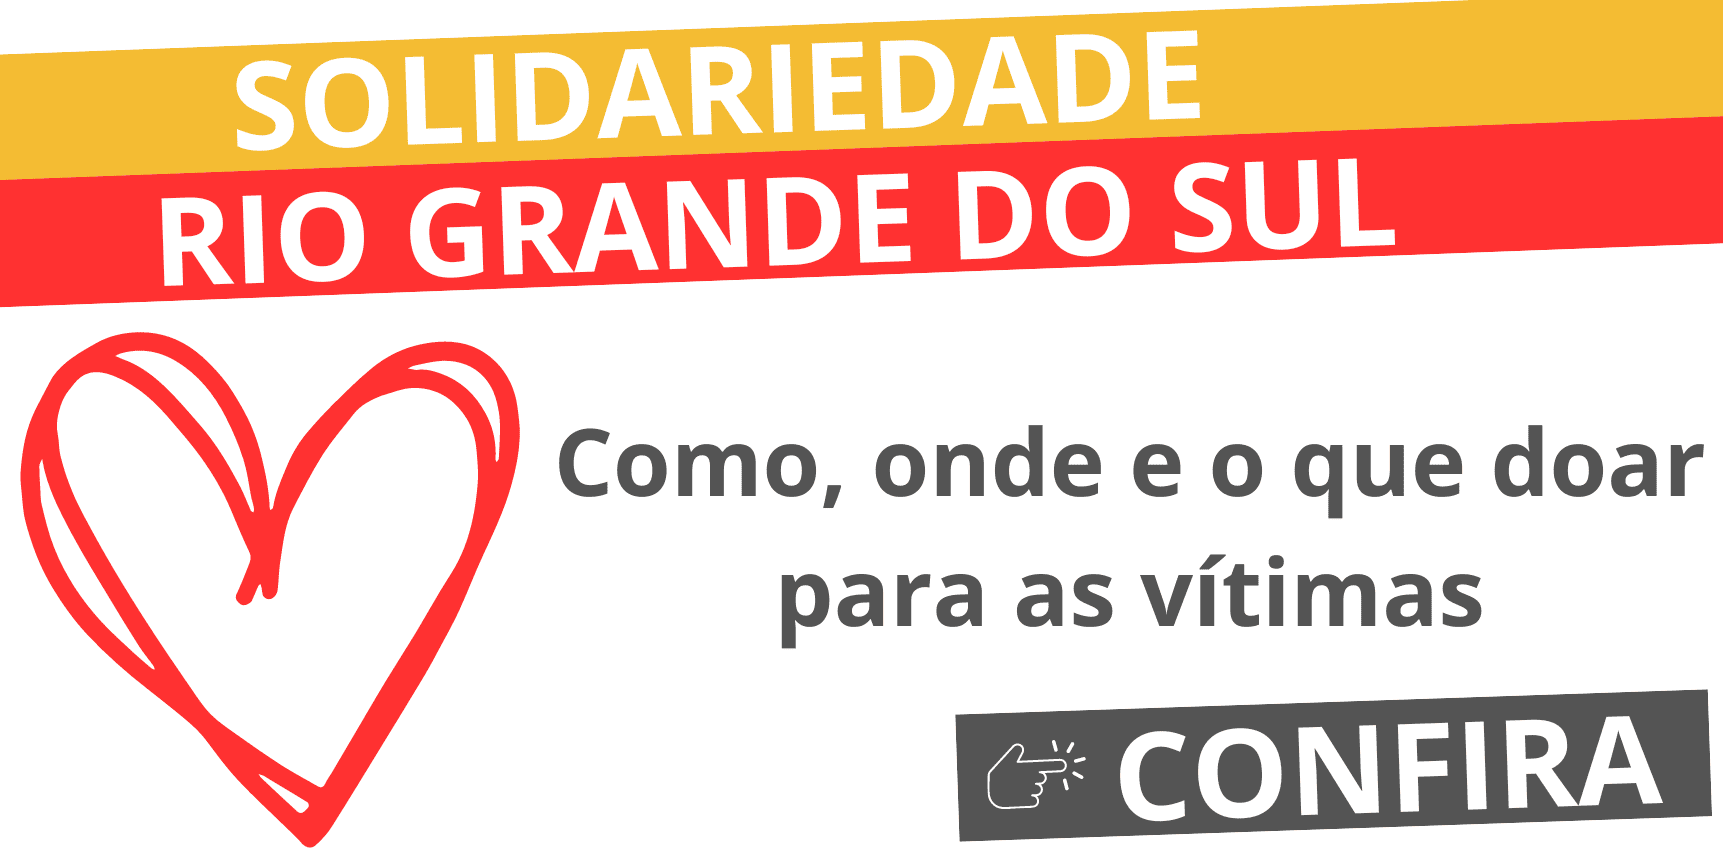 SOLIDARIEDADE – RIO GRANDE DO SUL: Confira como, onde e o que doar para as vítimas